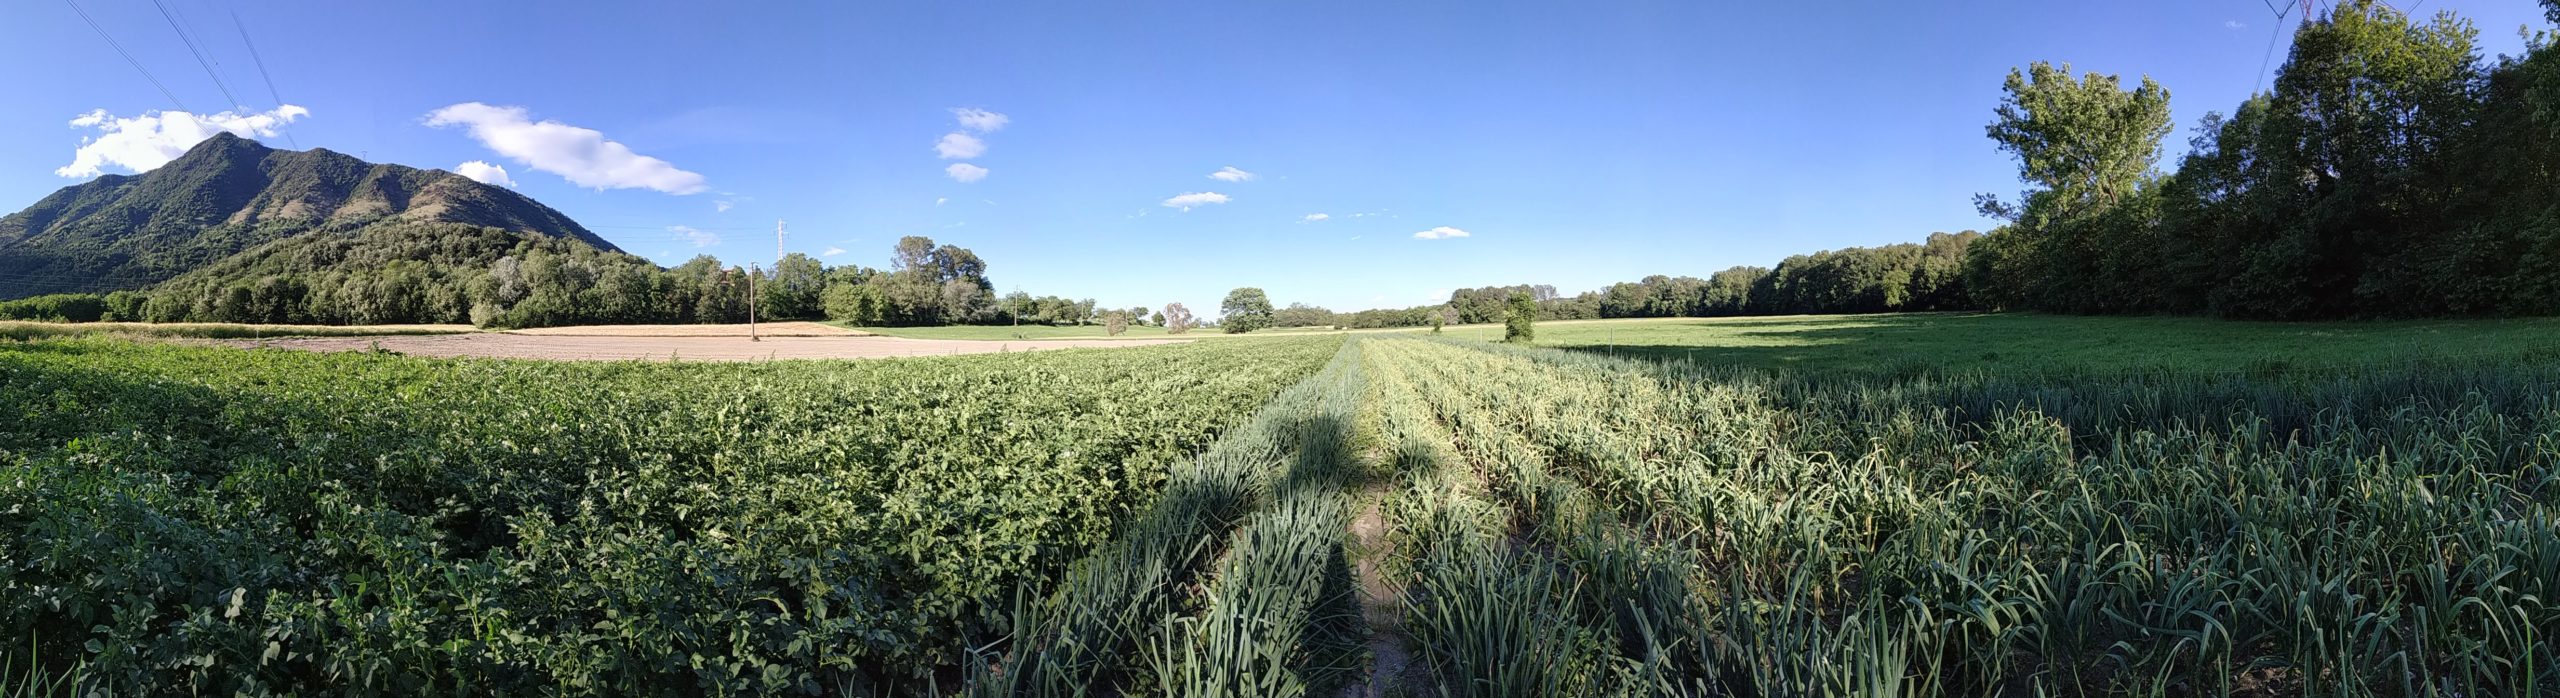 campo dell'azienda agricola sottoboschi di patate, cipolle e aglio a inizio giugno, a Caselette